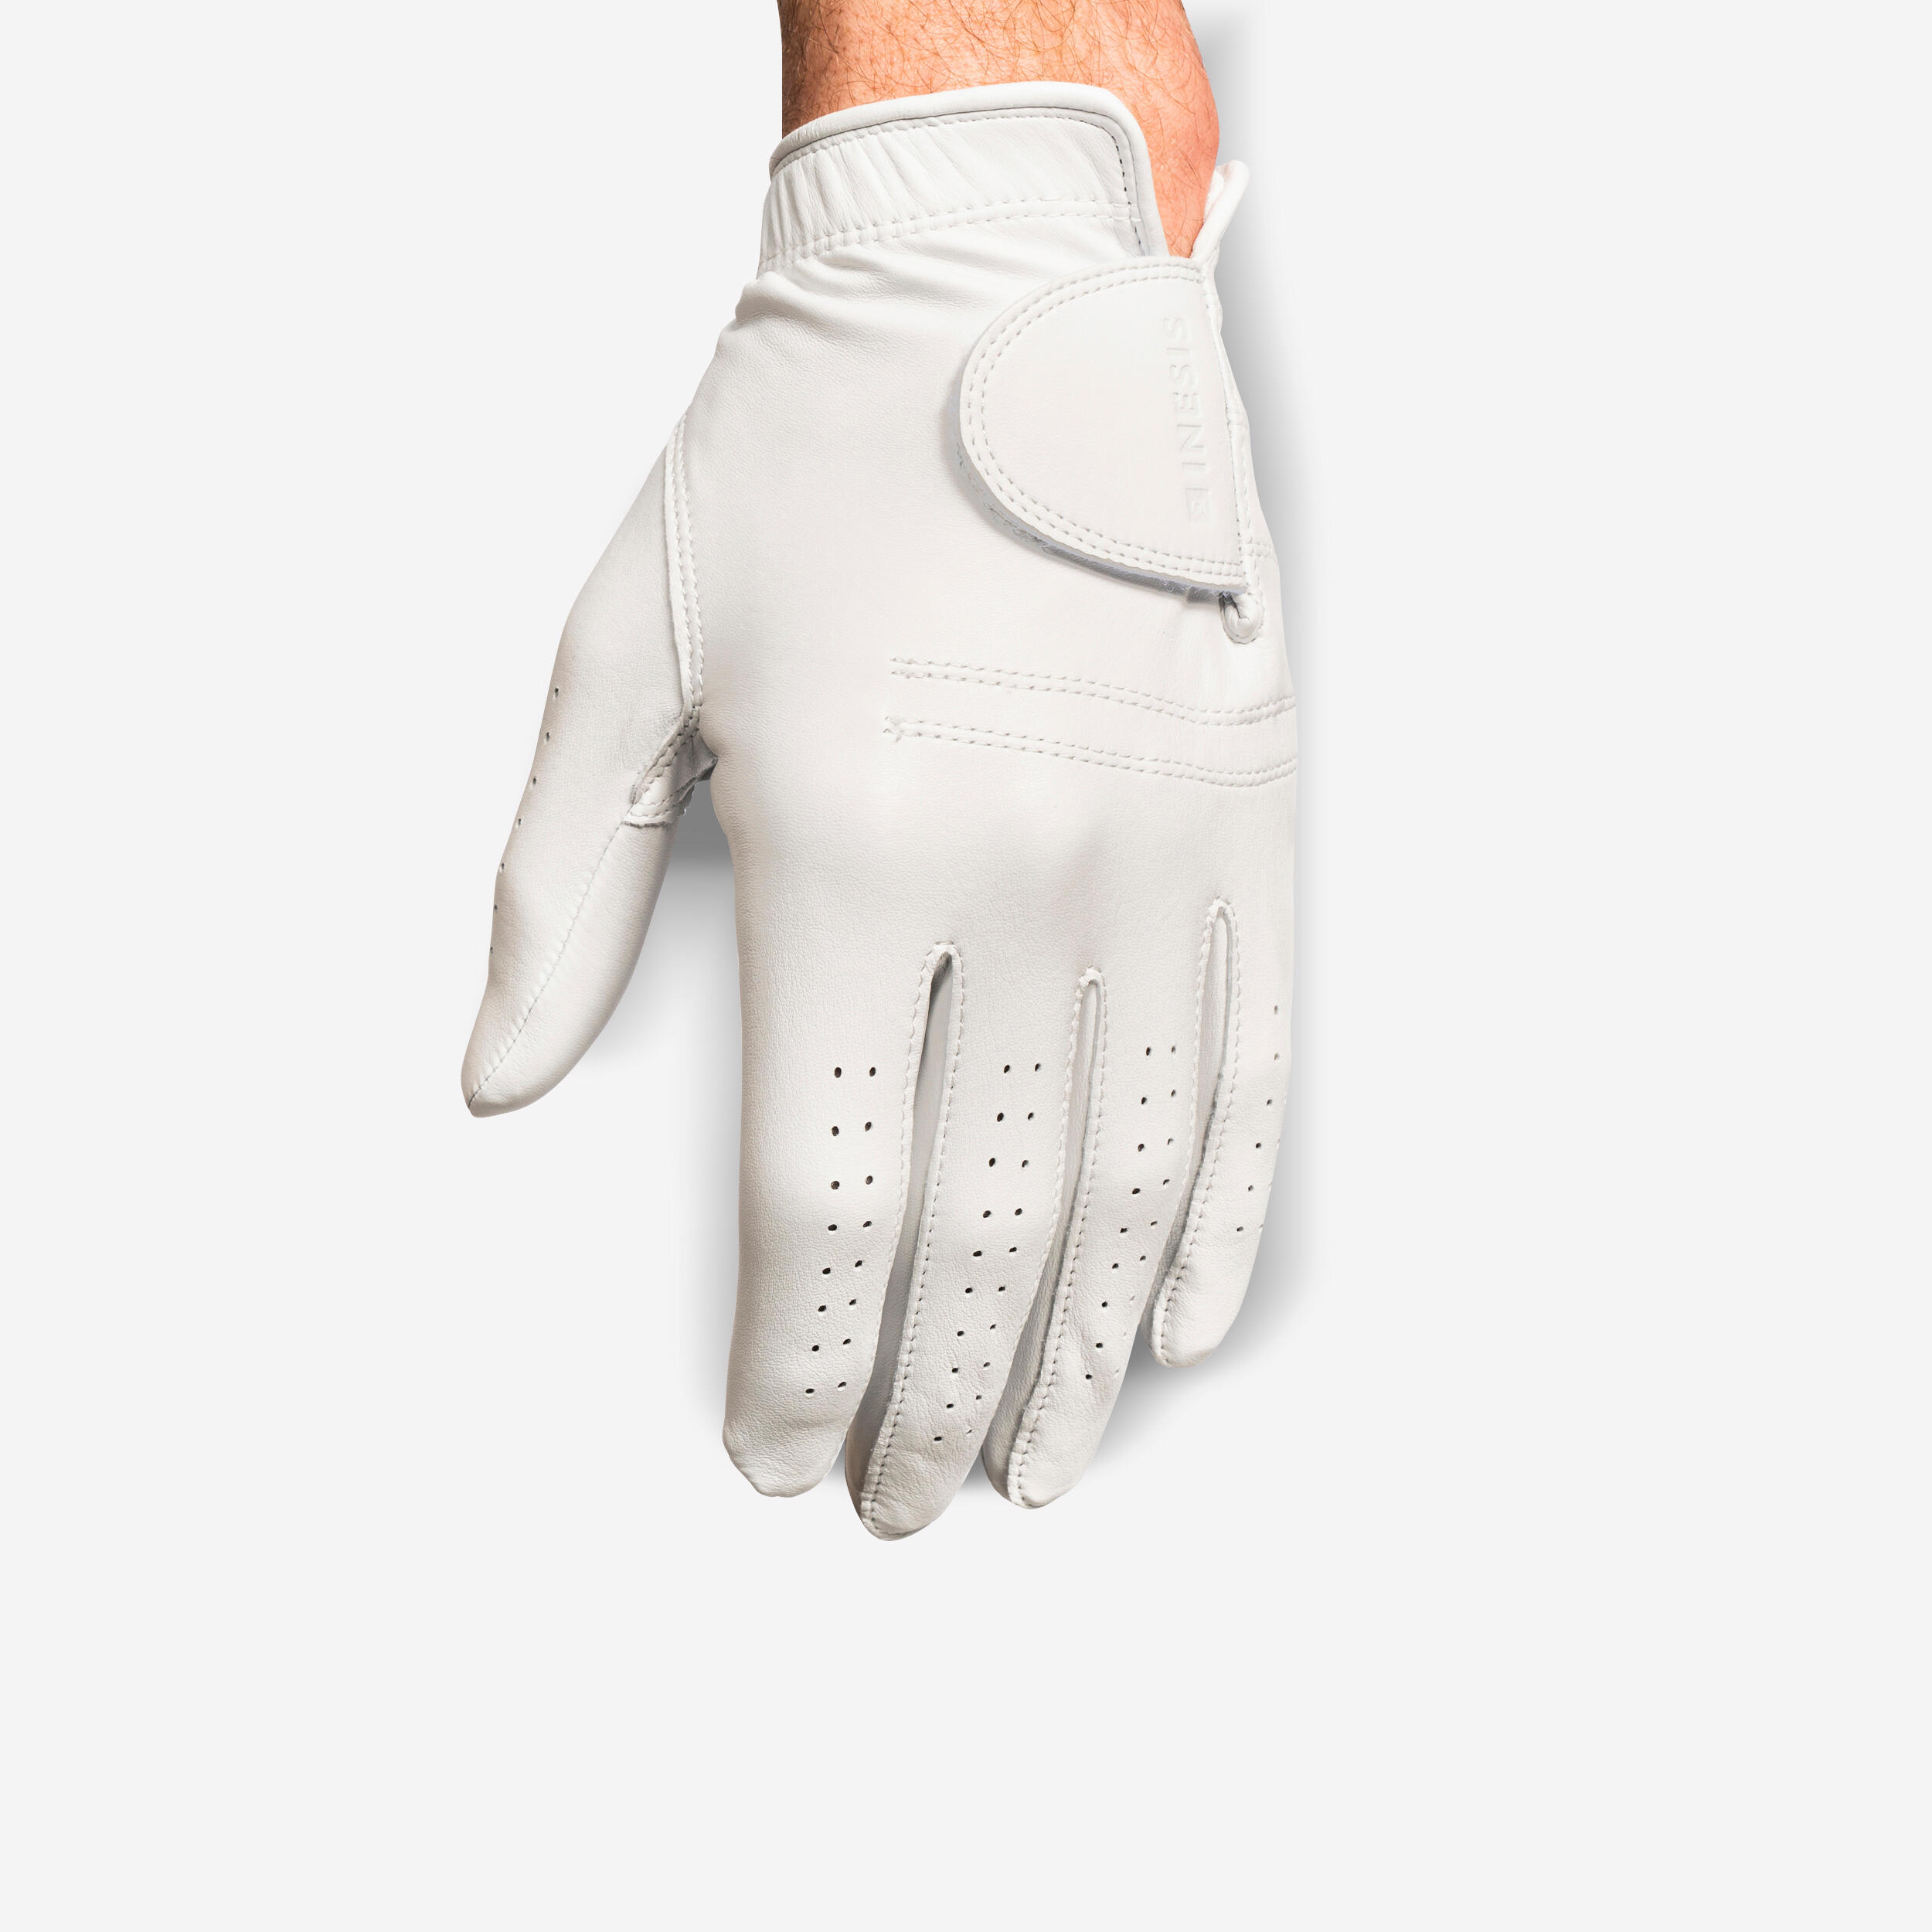 Men’s RH Cabretta Golf Glove - Tour 900 White - INESIS